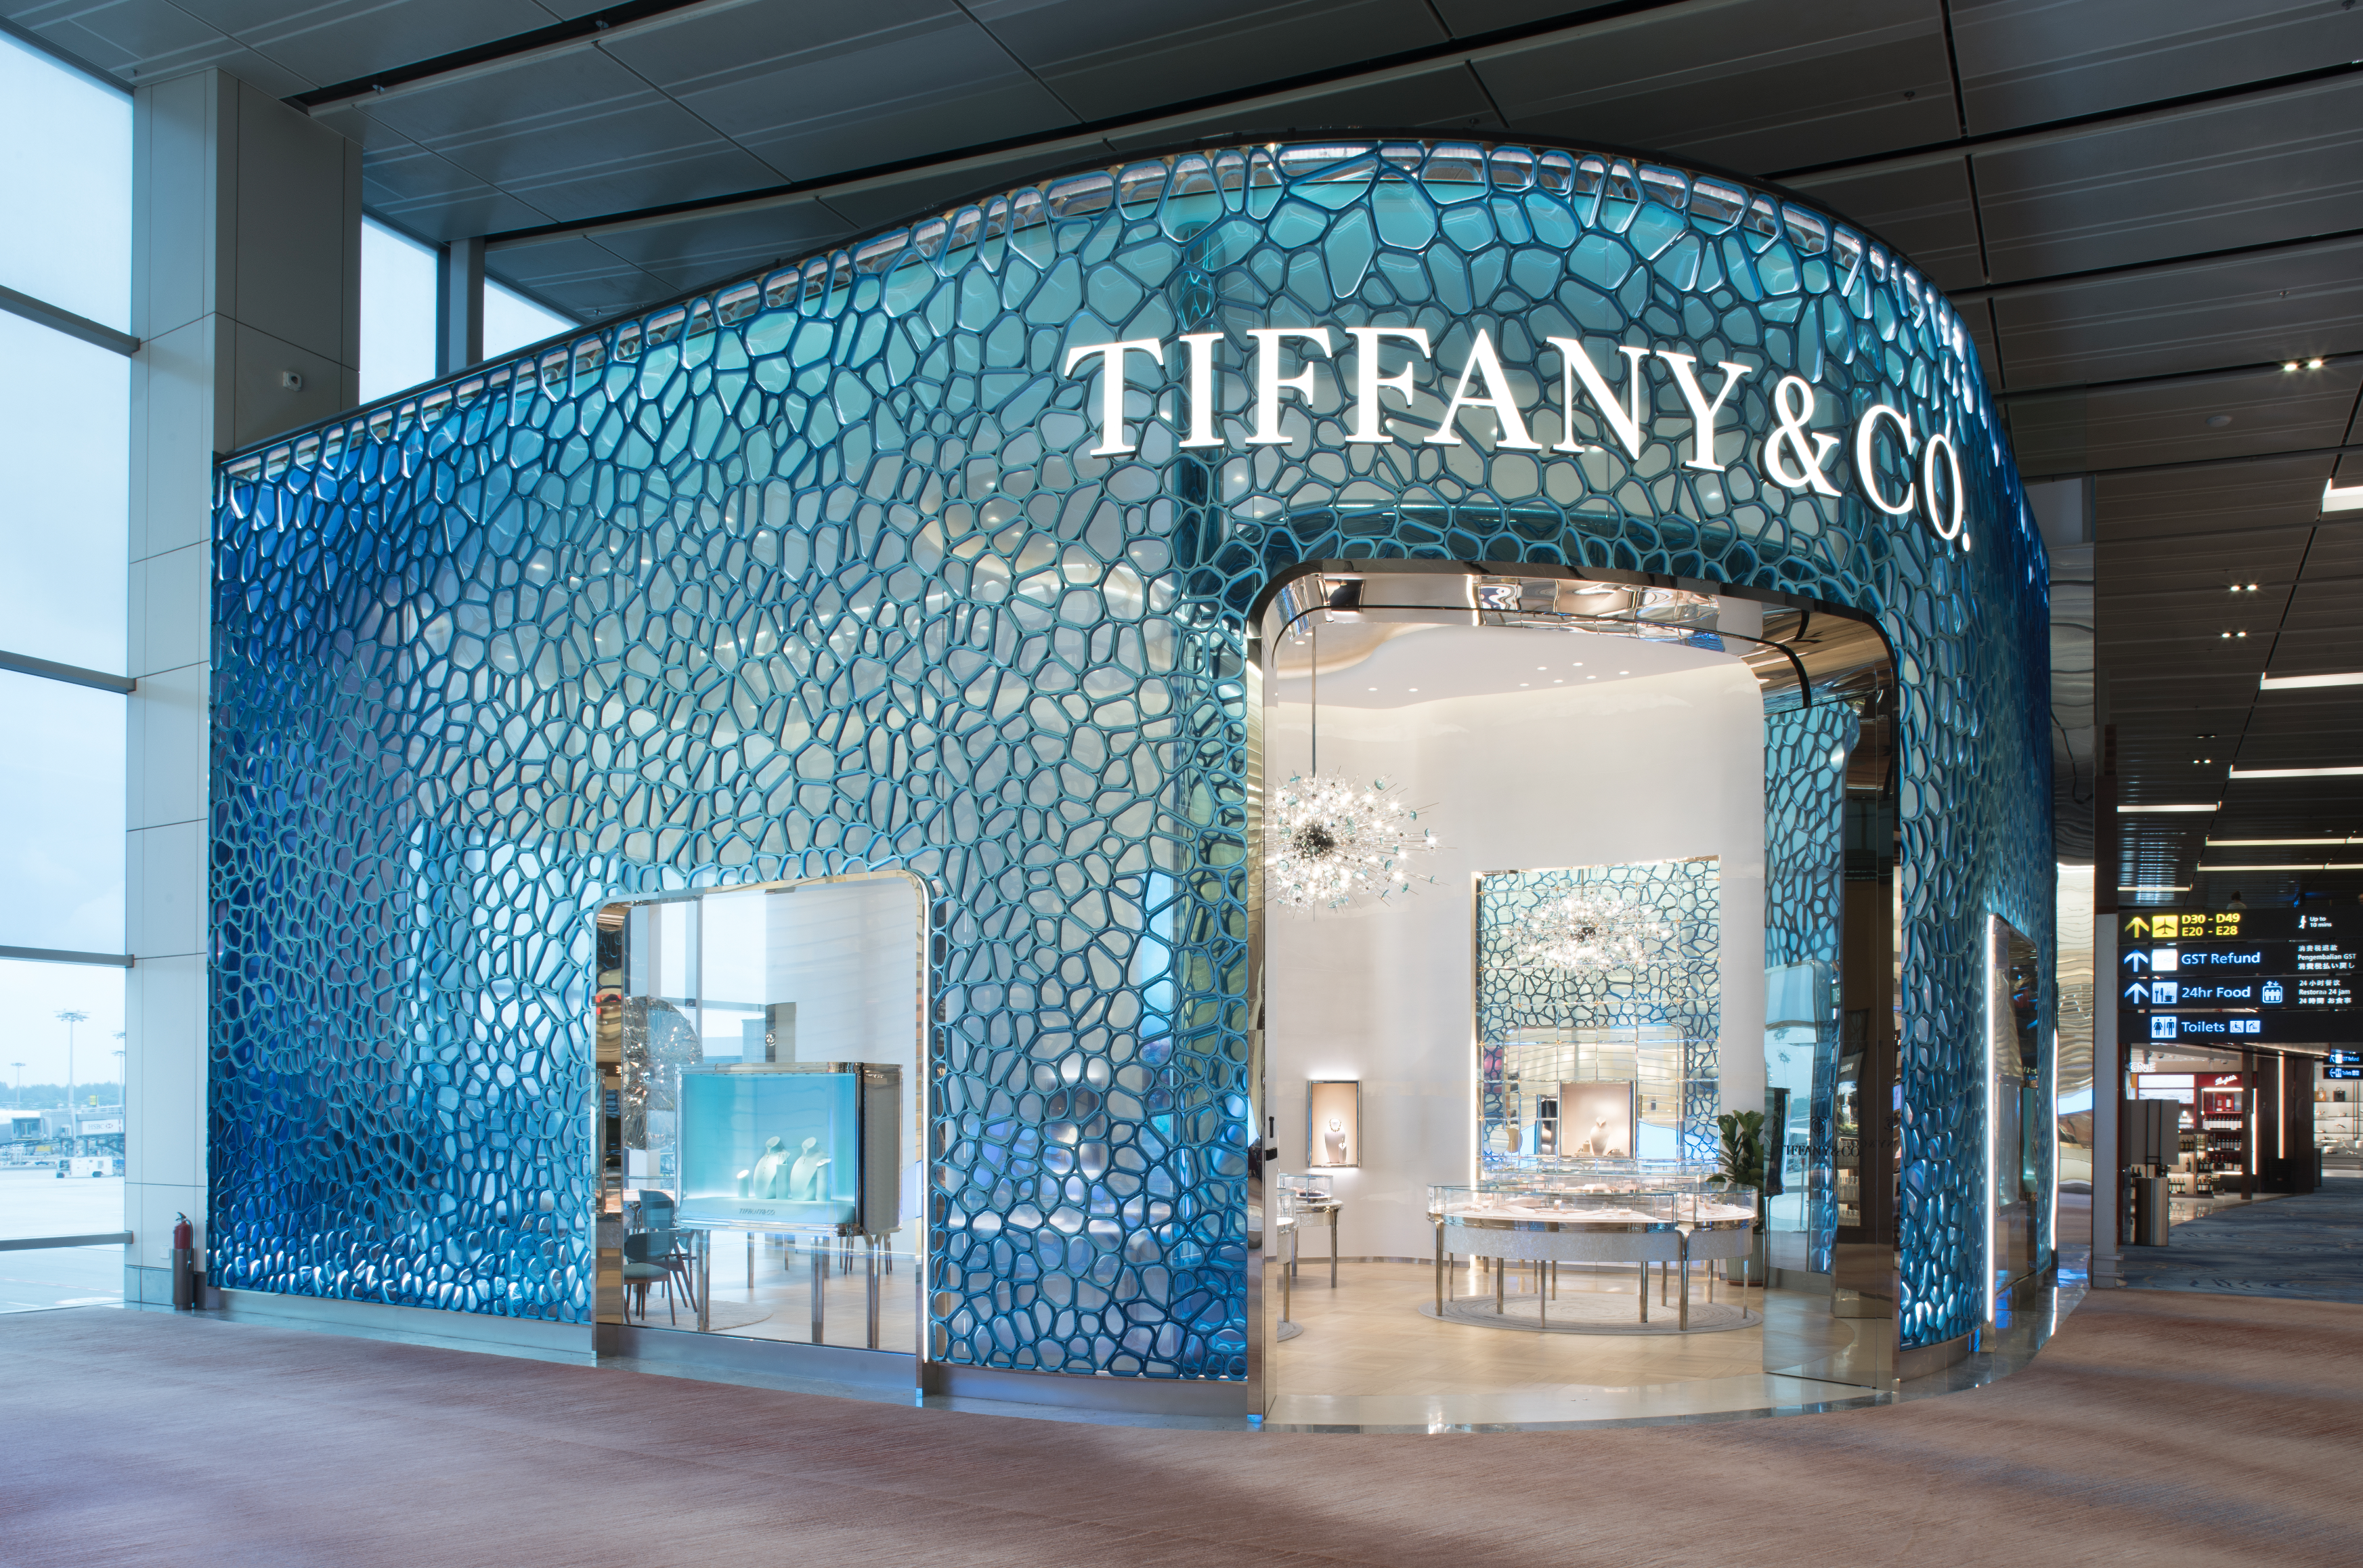 Een vestiging van juwelier Tiffany & Co., waarvan startup Aectual het interieur leverde. 